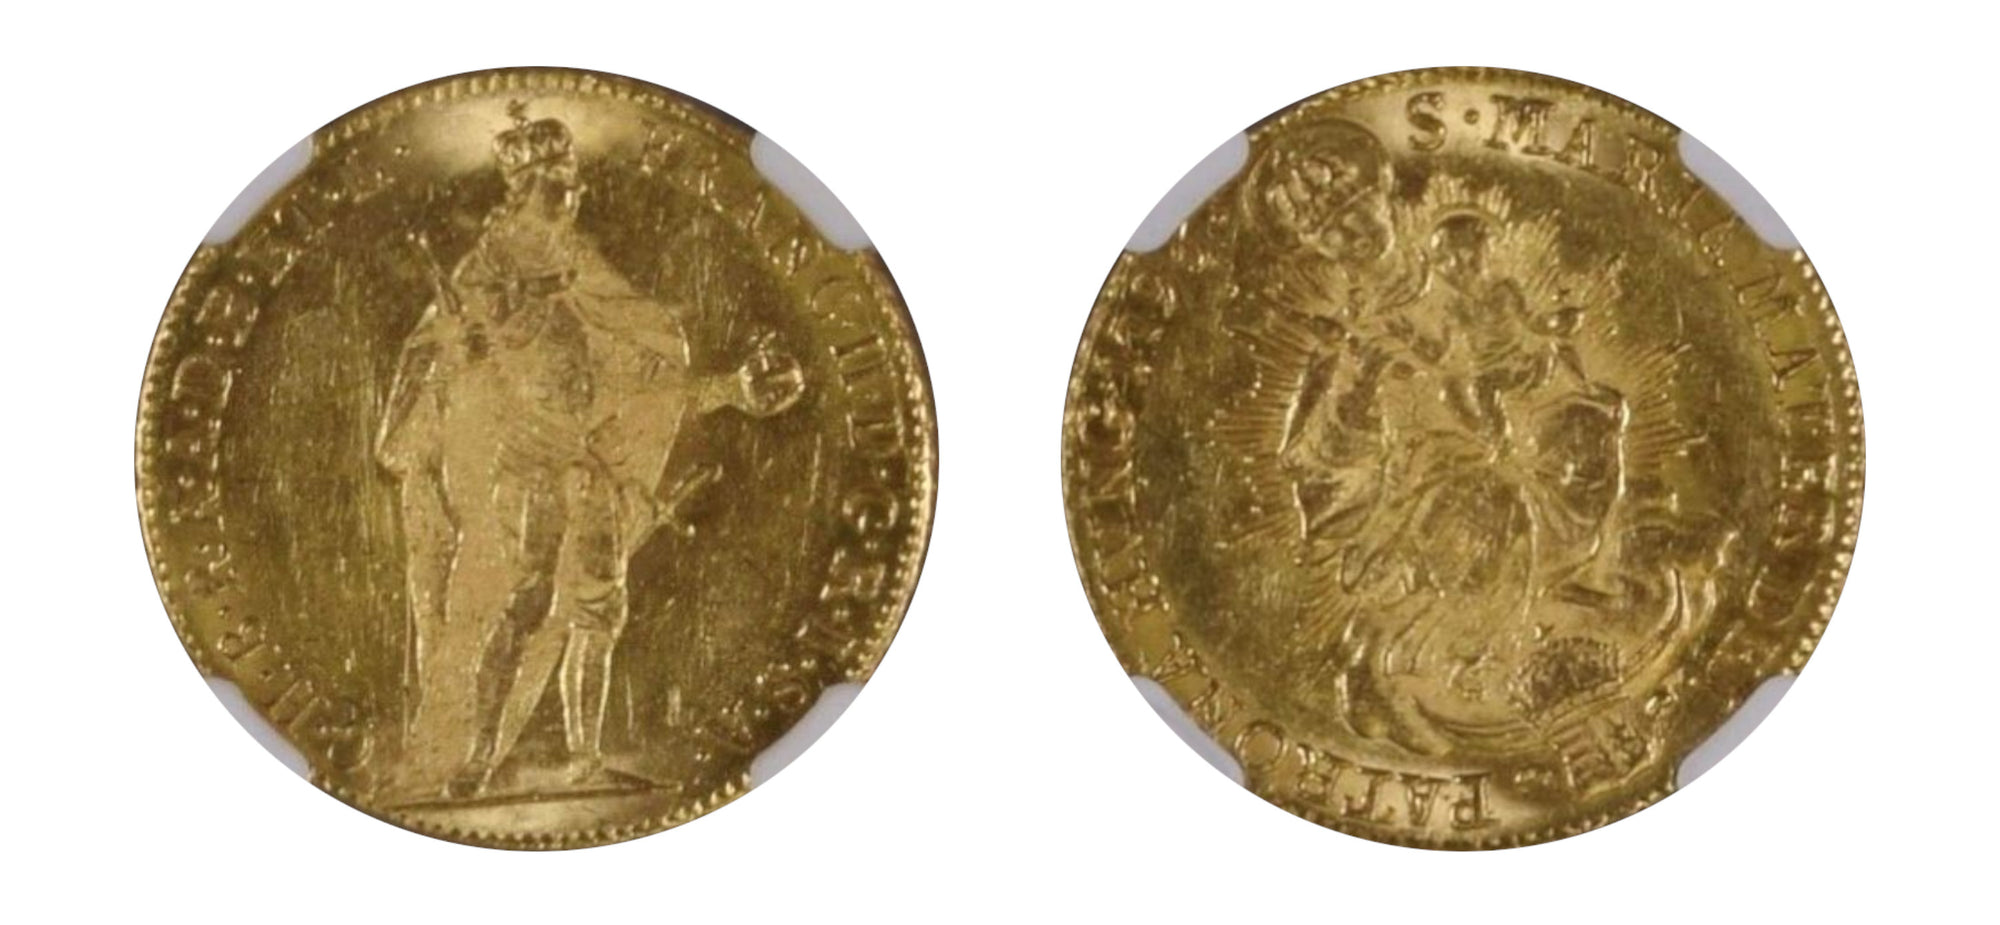 1796 Gold Ducat NGC MS 61 - Hard Asset Management, Inc